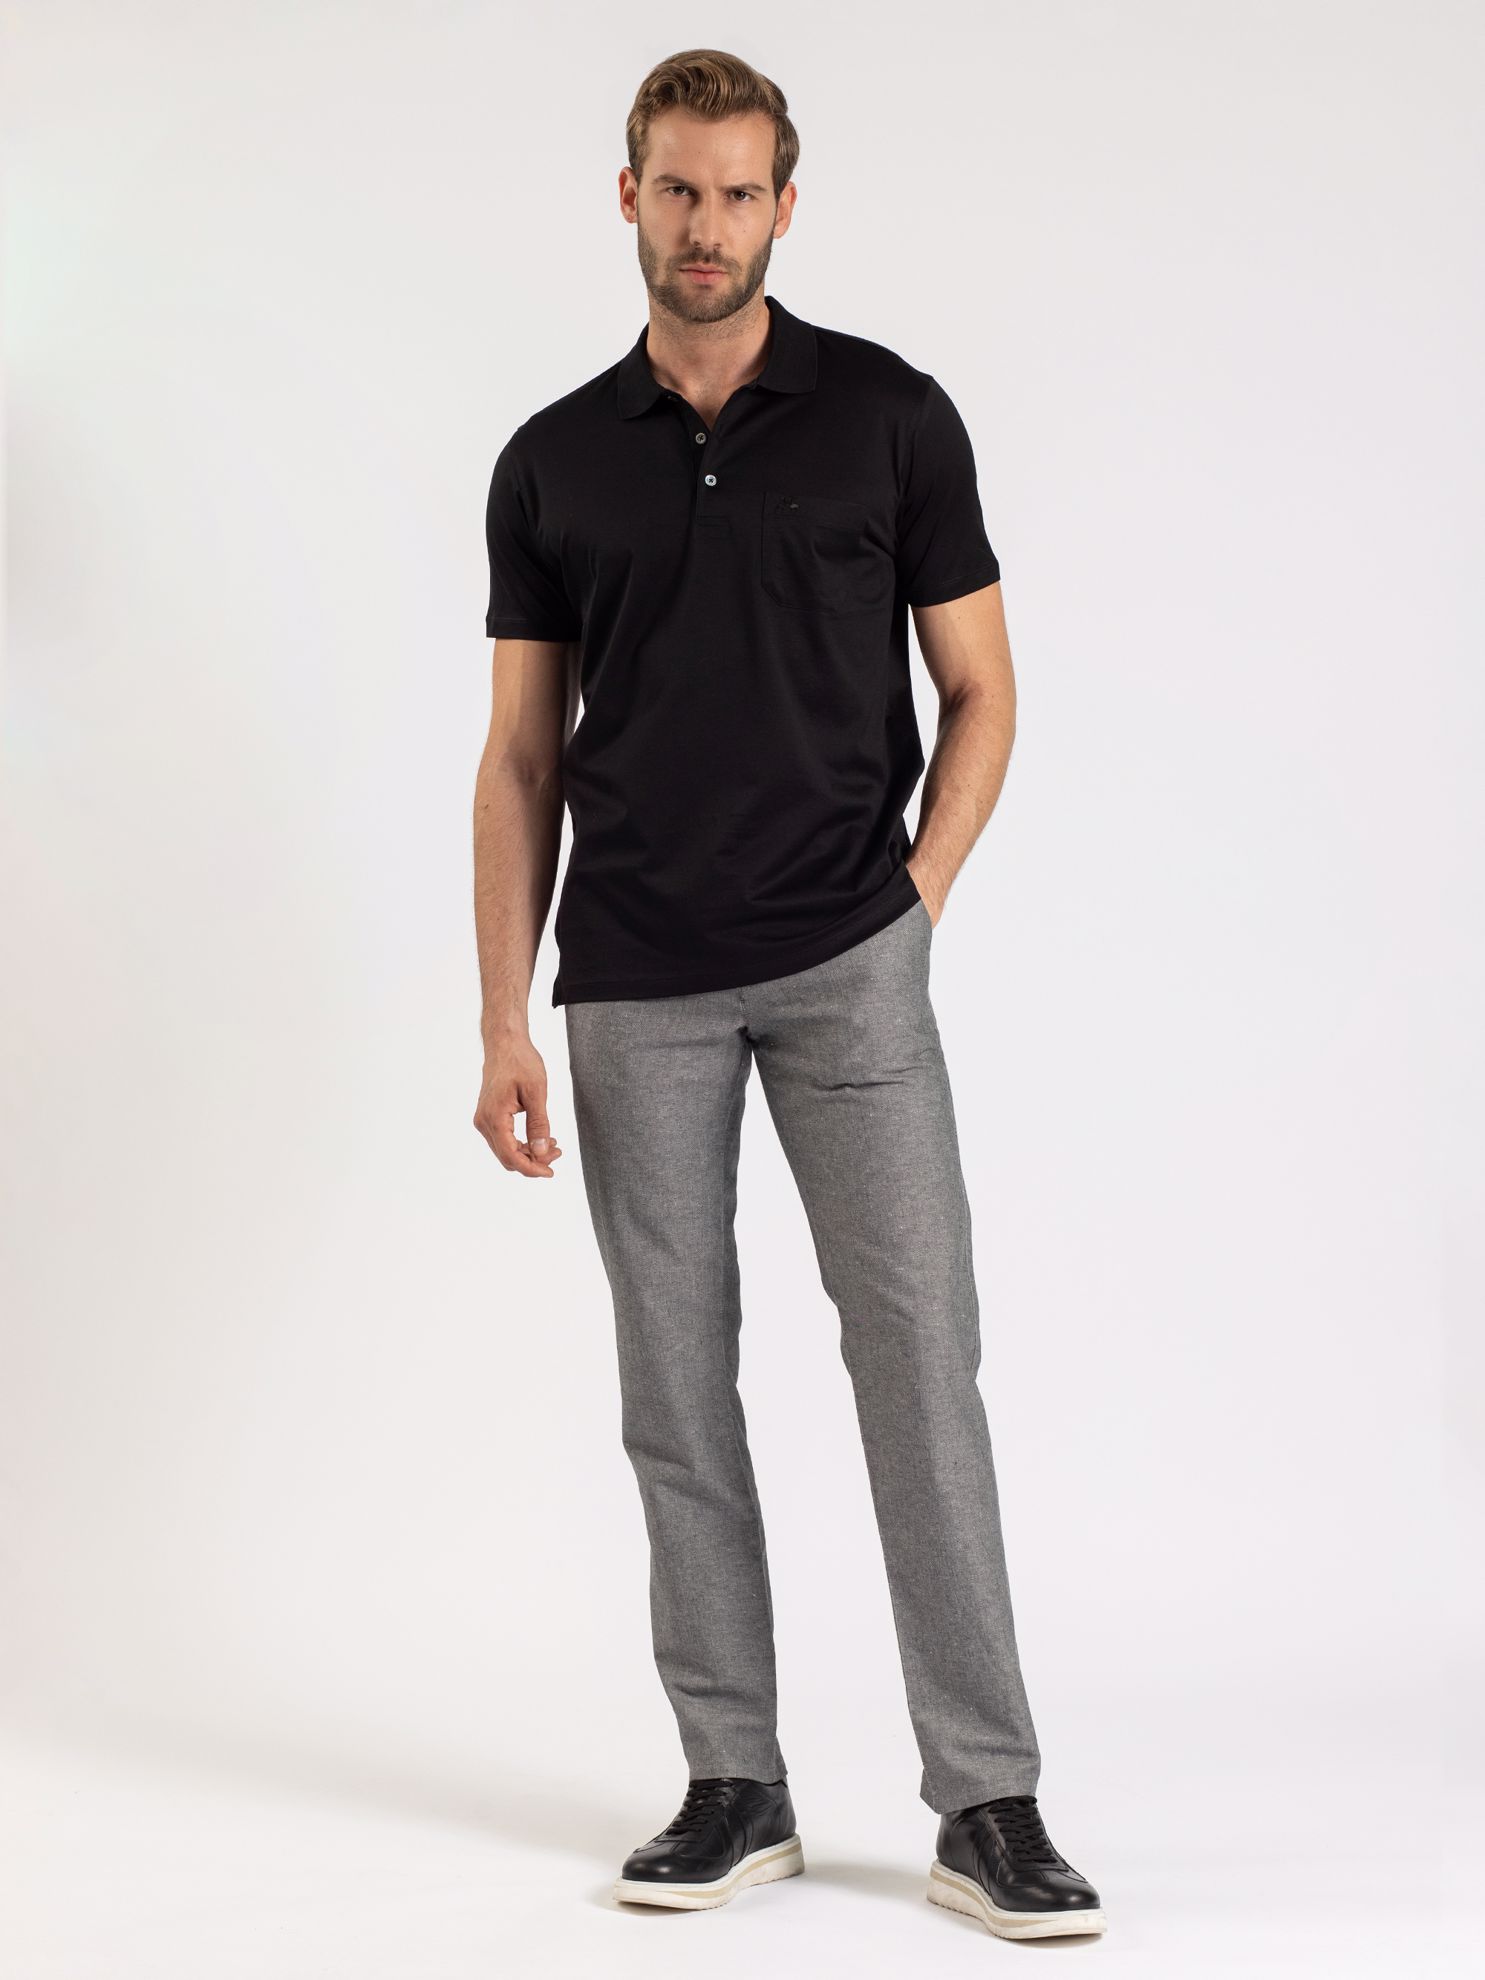 Karaca Erkek Regular Fit Polo Yaka Tişört-Siyah. ürün görseli